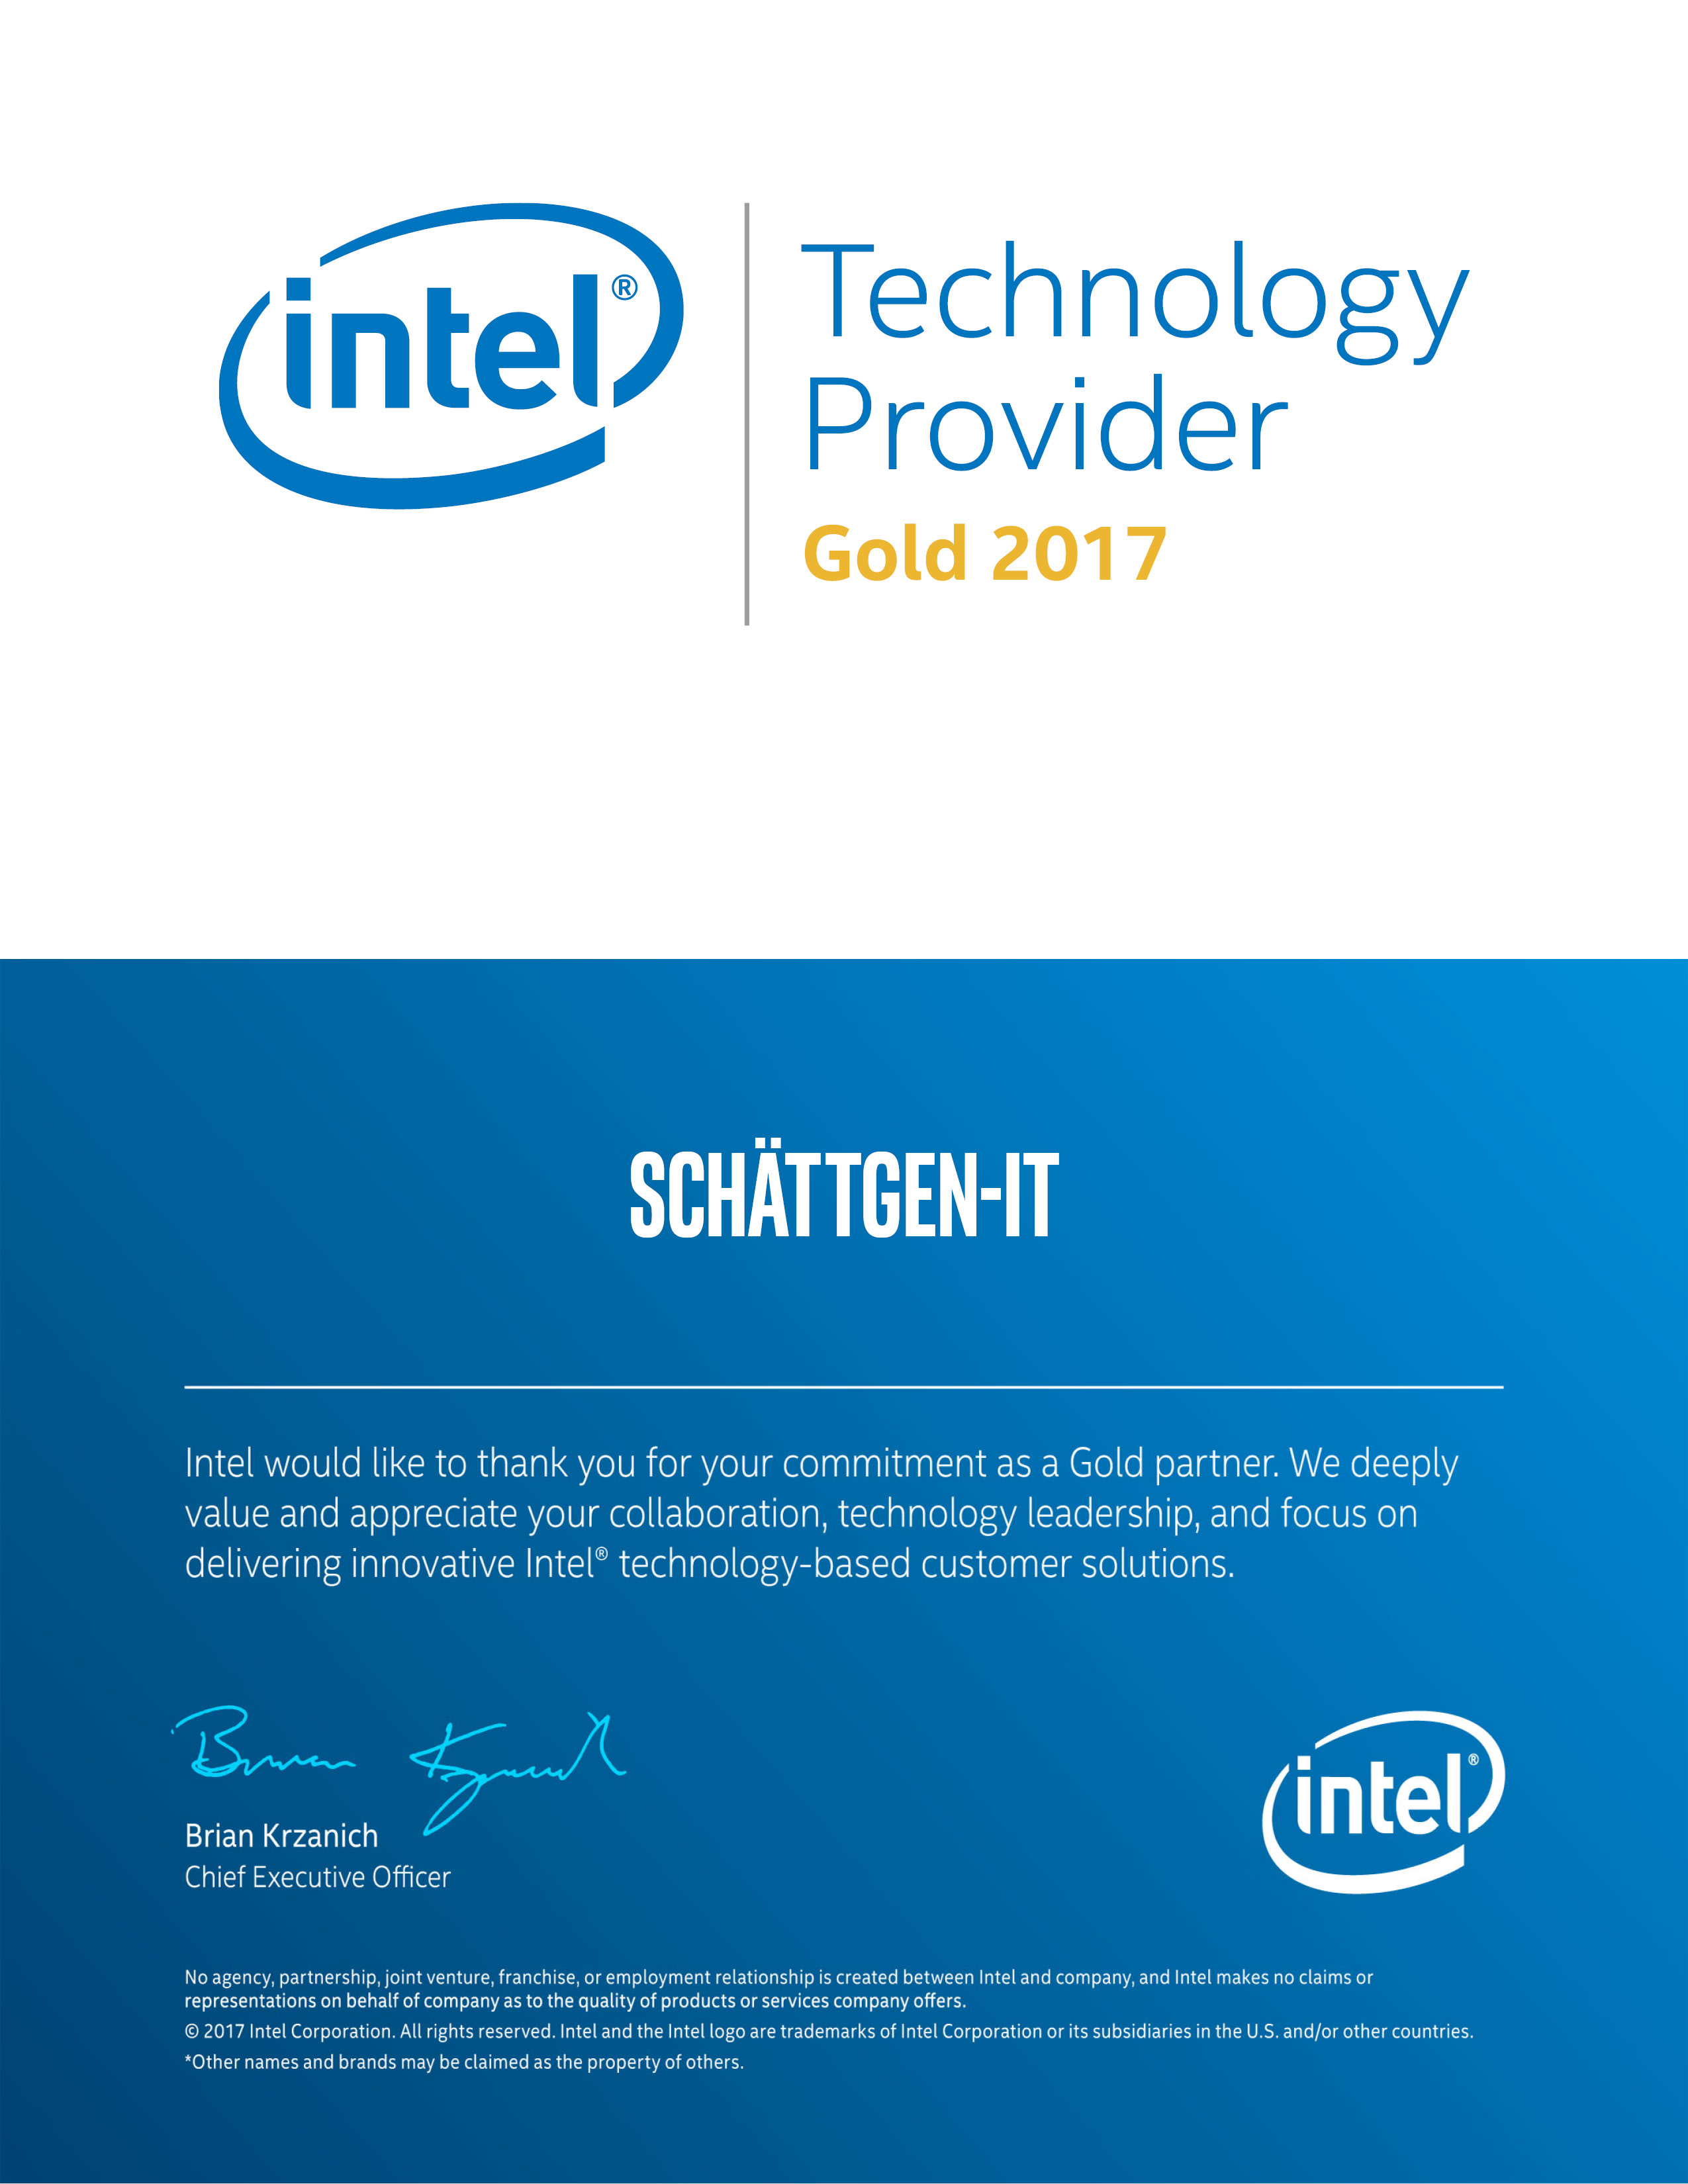 Intel Gold Member 2017